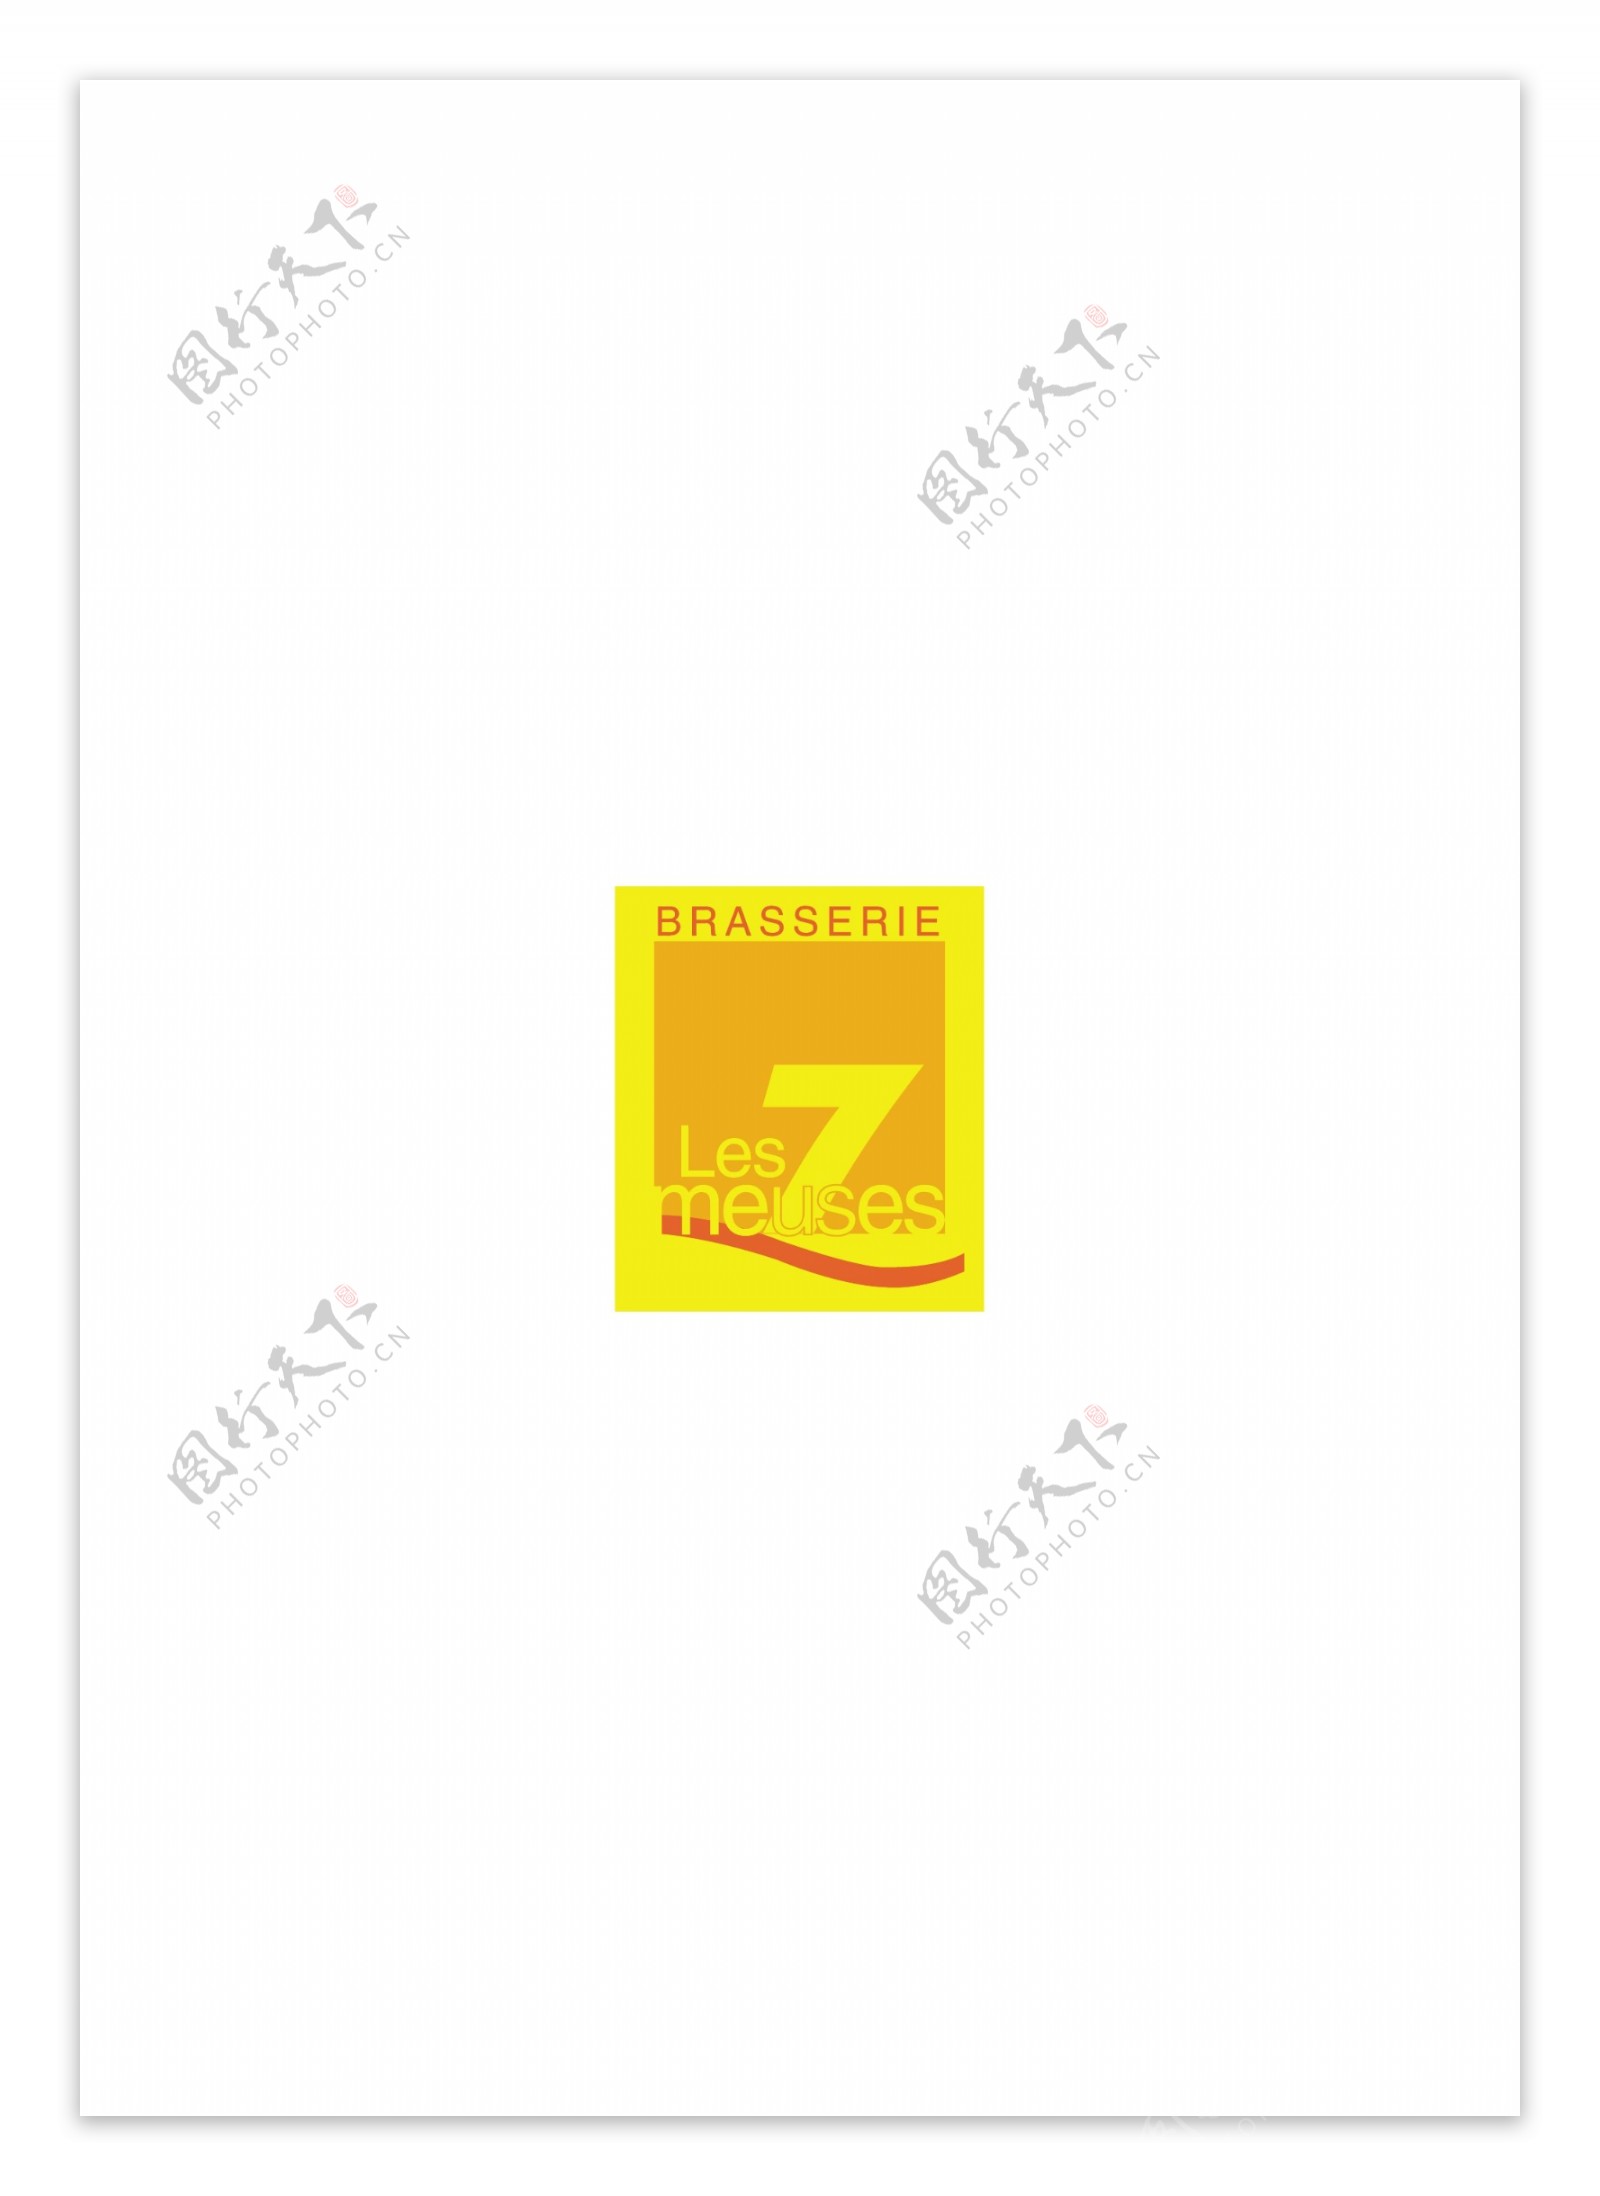 7Meuseslogo设计欣赏7Meuses酒店业标志下载标志设计欣赏